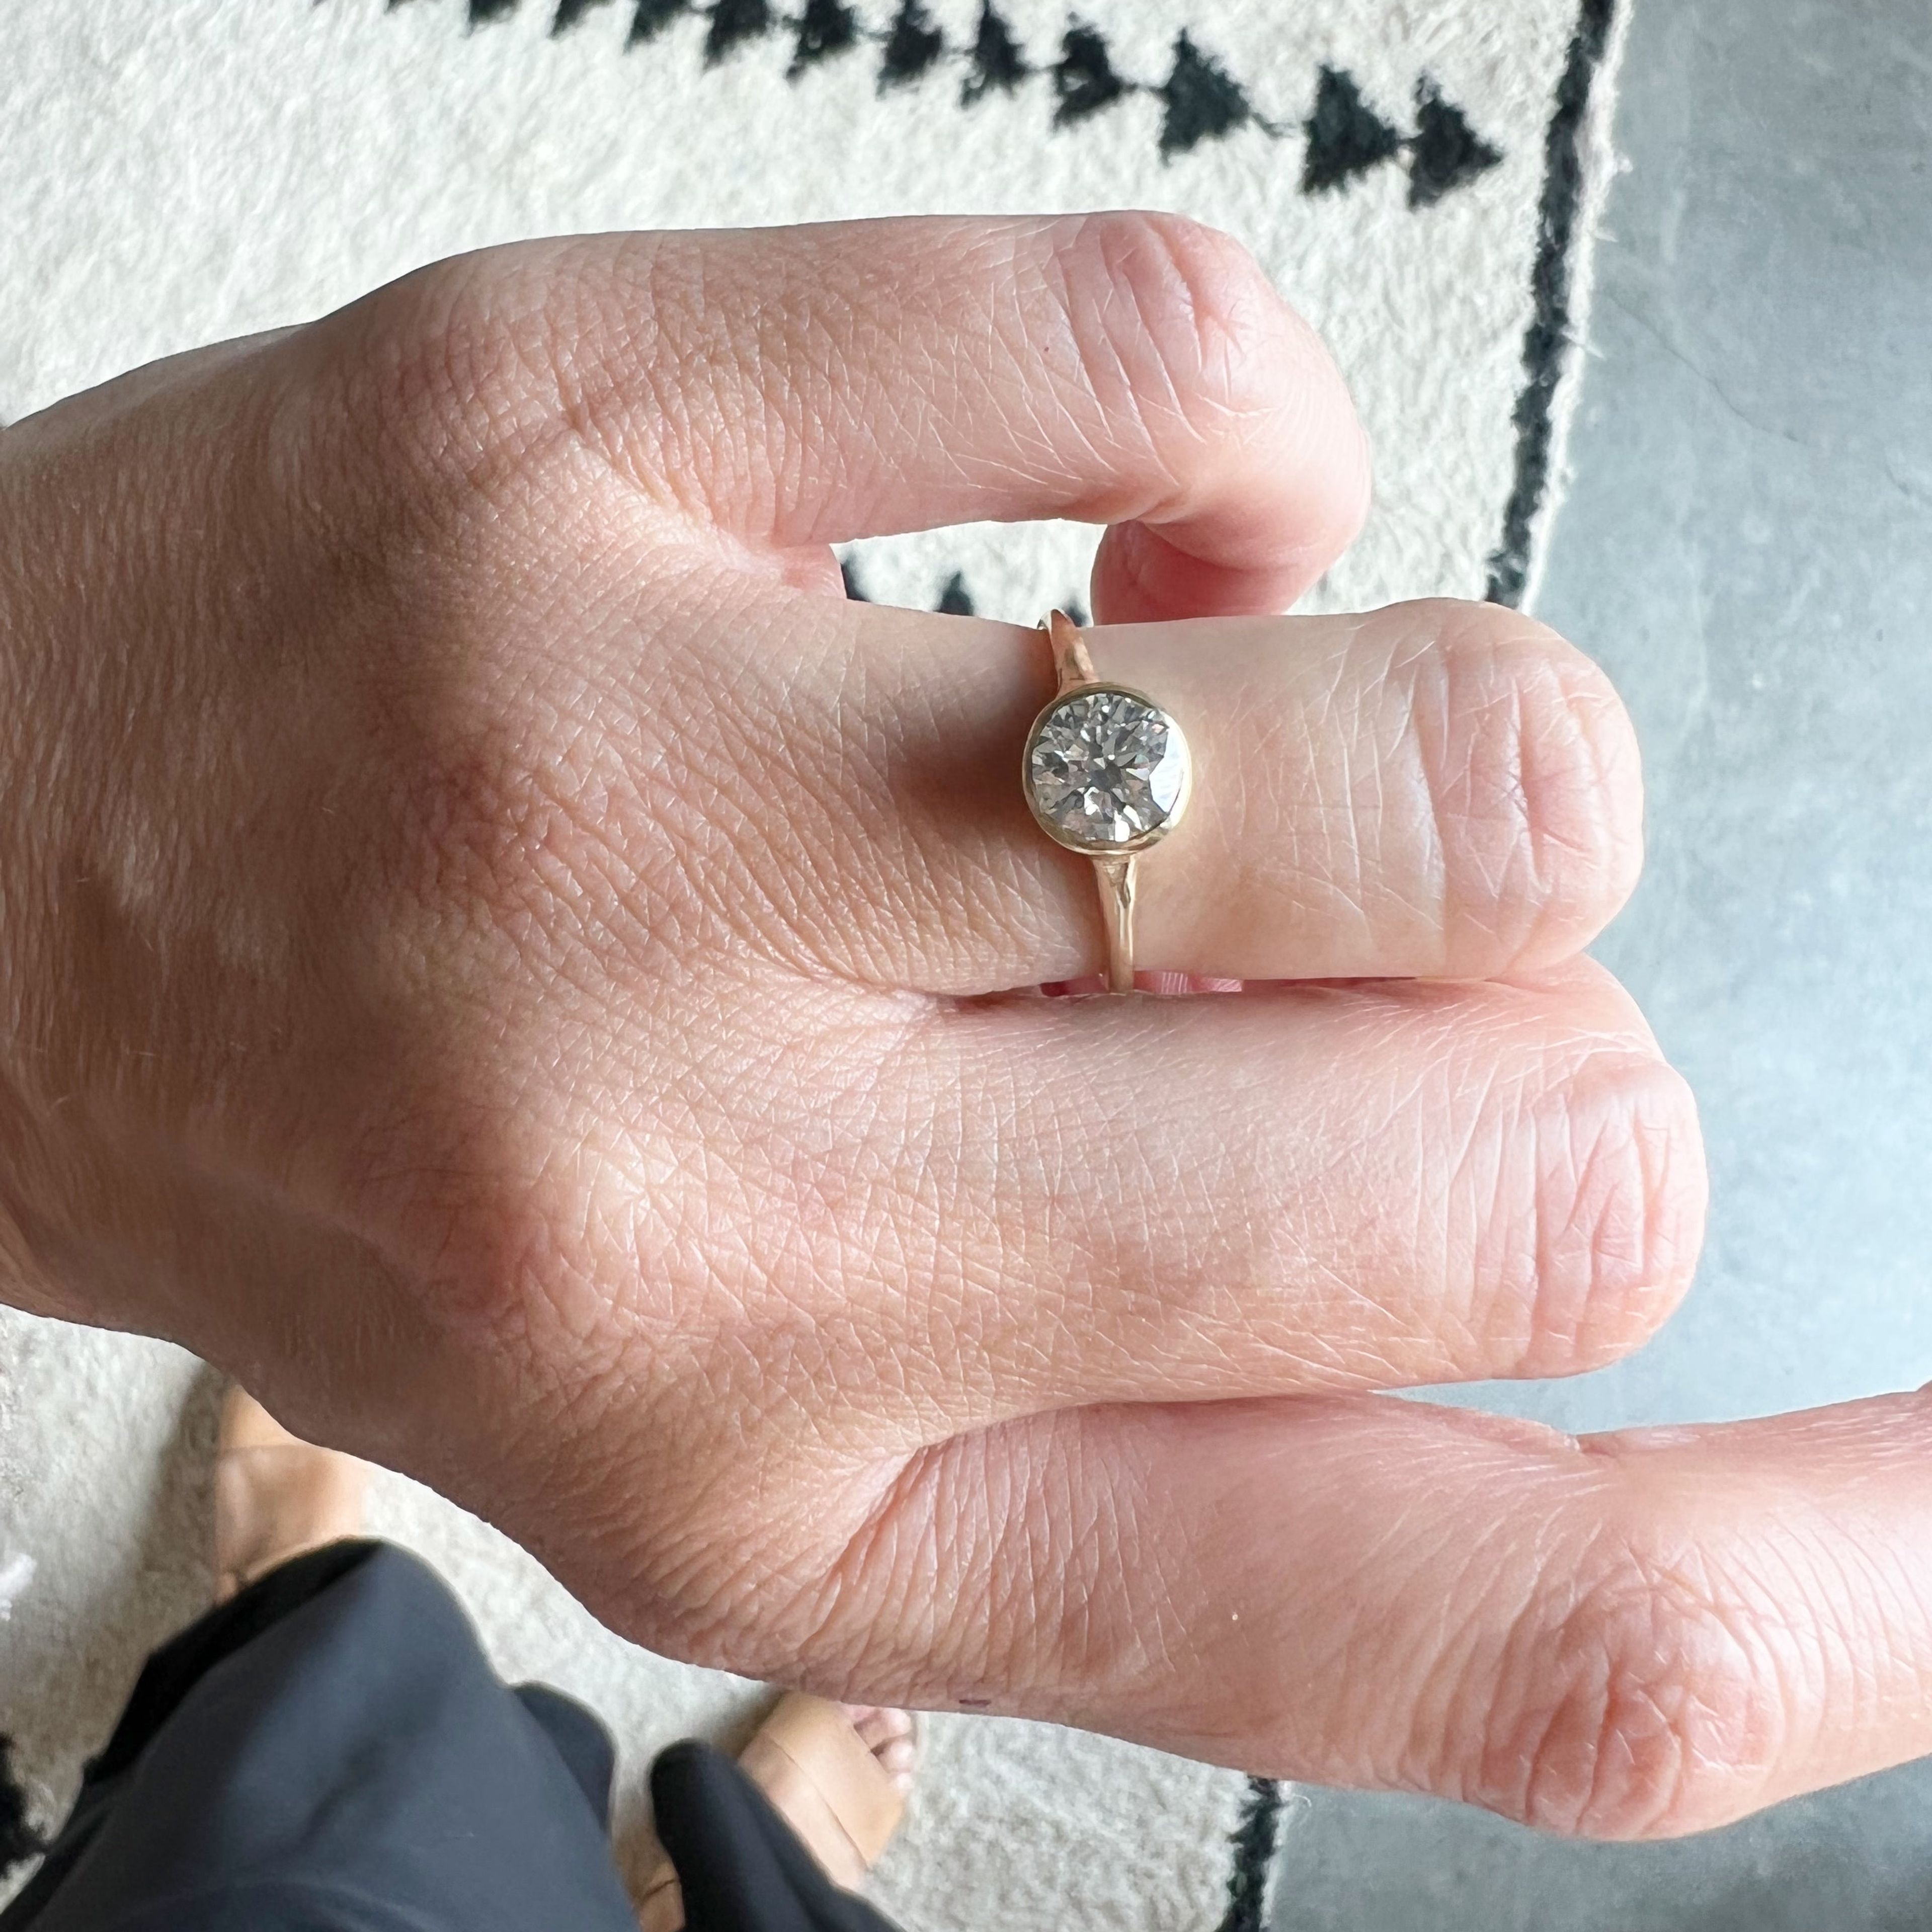 JP GILD BEZEL SET WHITE DIAMOND RING - 1.03ct